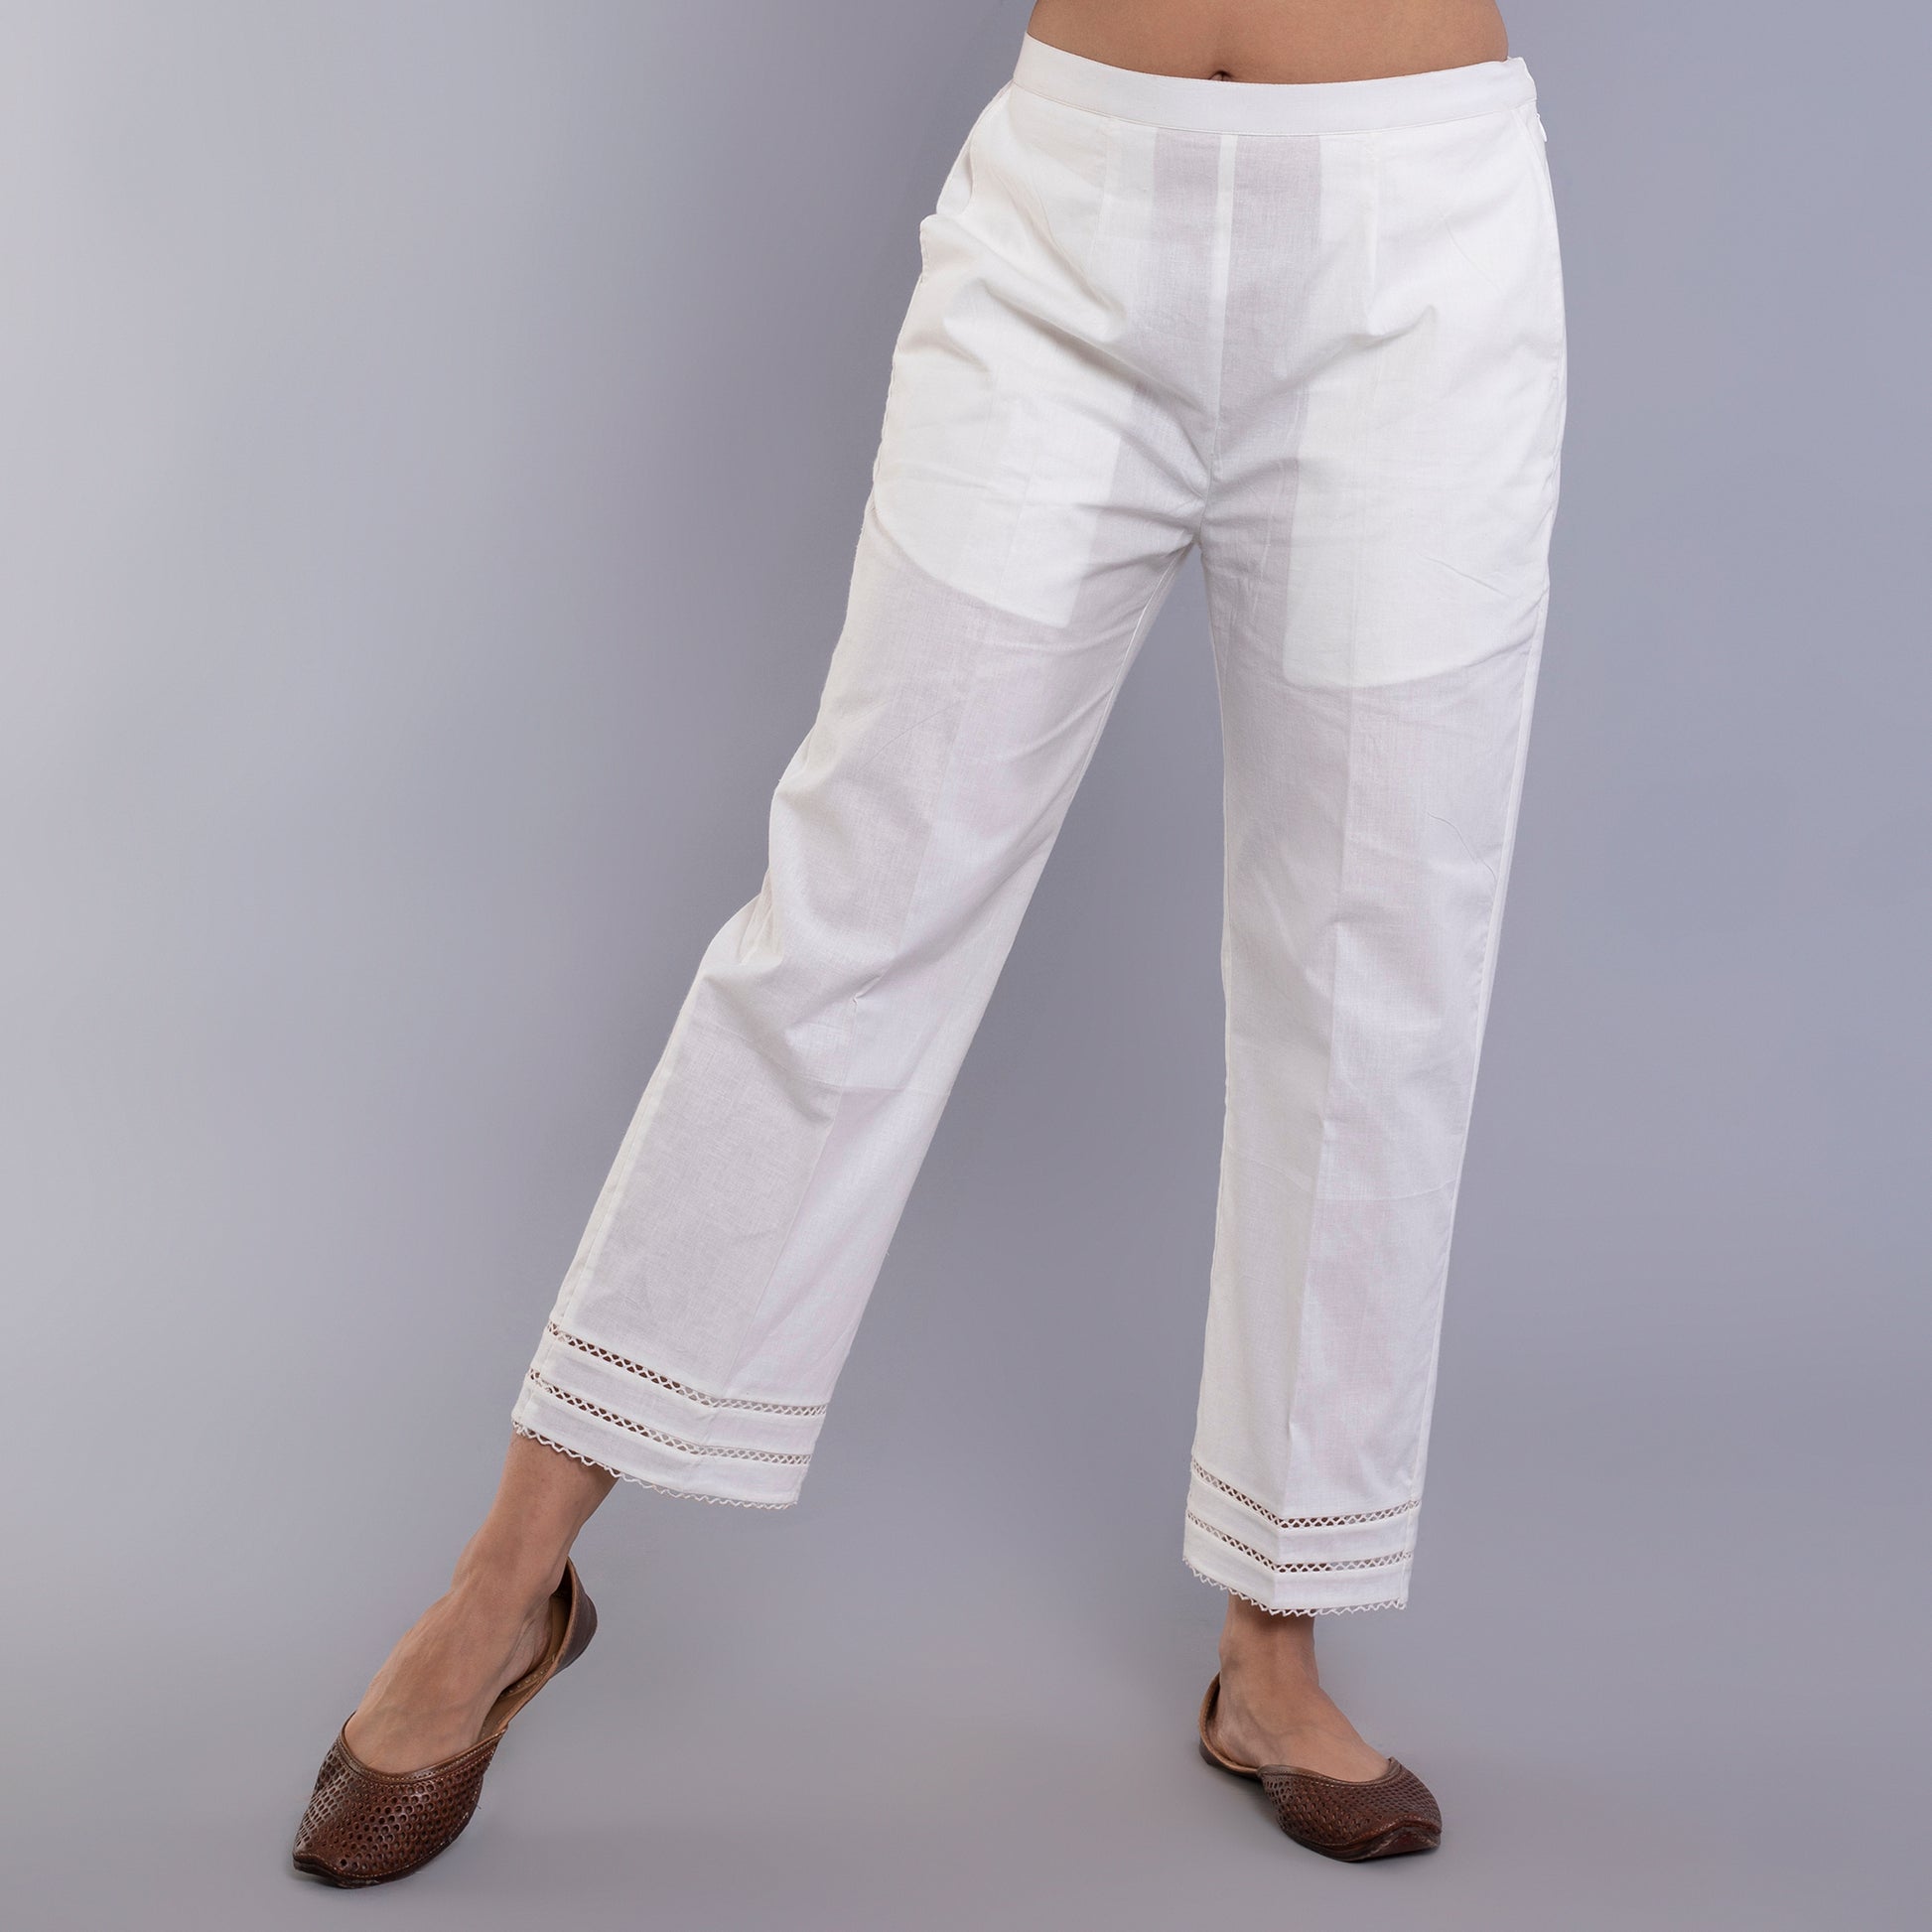 White Lace Pants Cotton Long Straight Pyjama